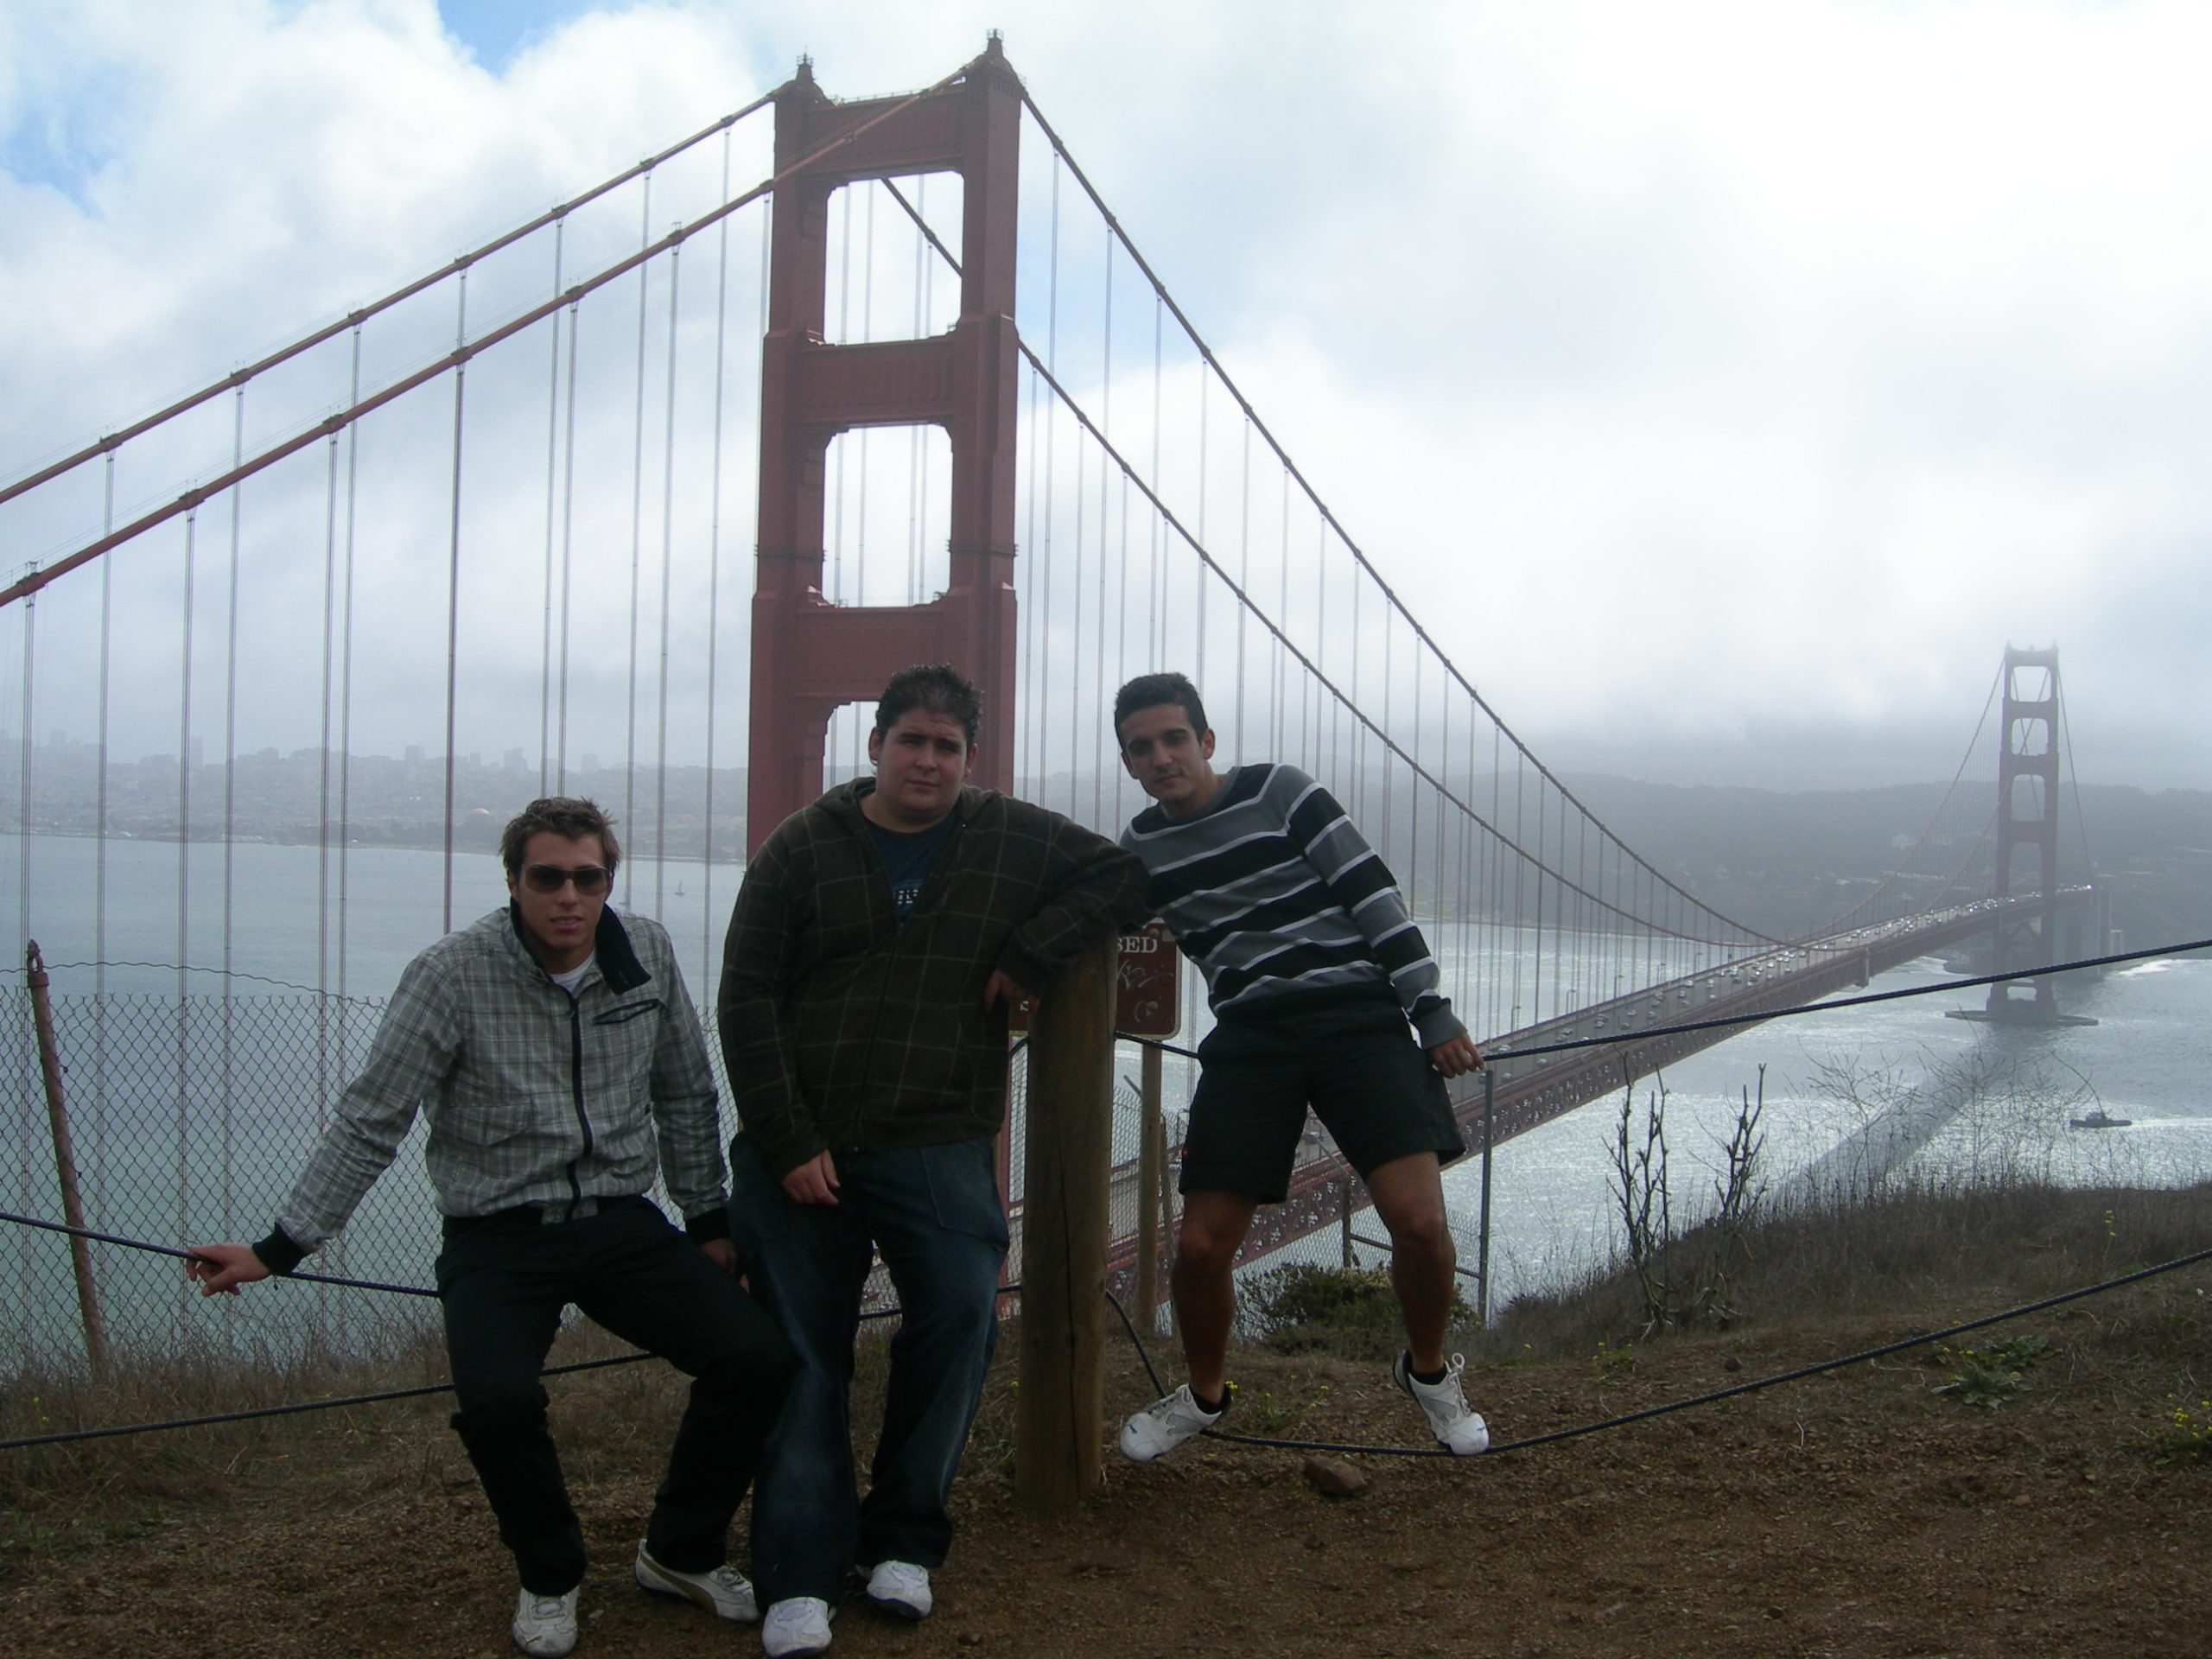 Juegos y deportes populares y tradicionales del mundo (América - EEUU -Golden Gate Bridge)